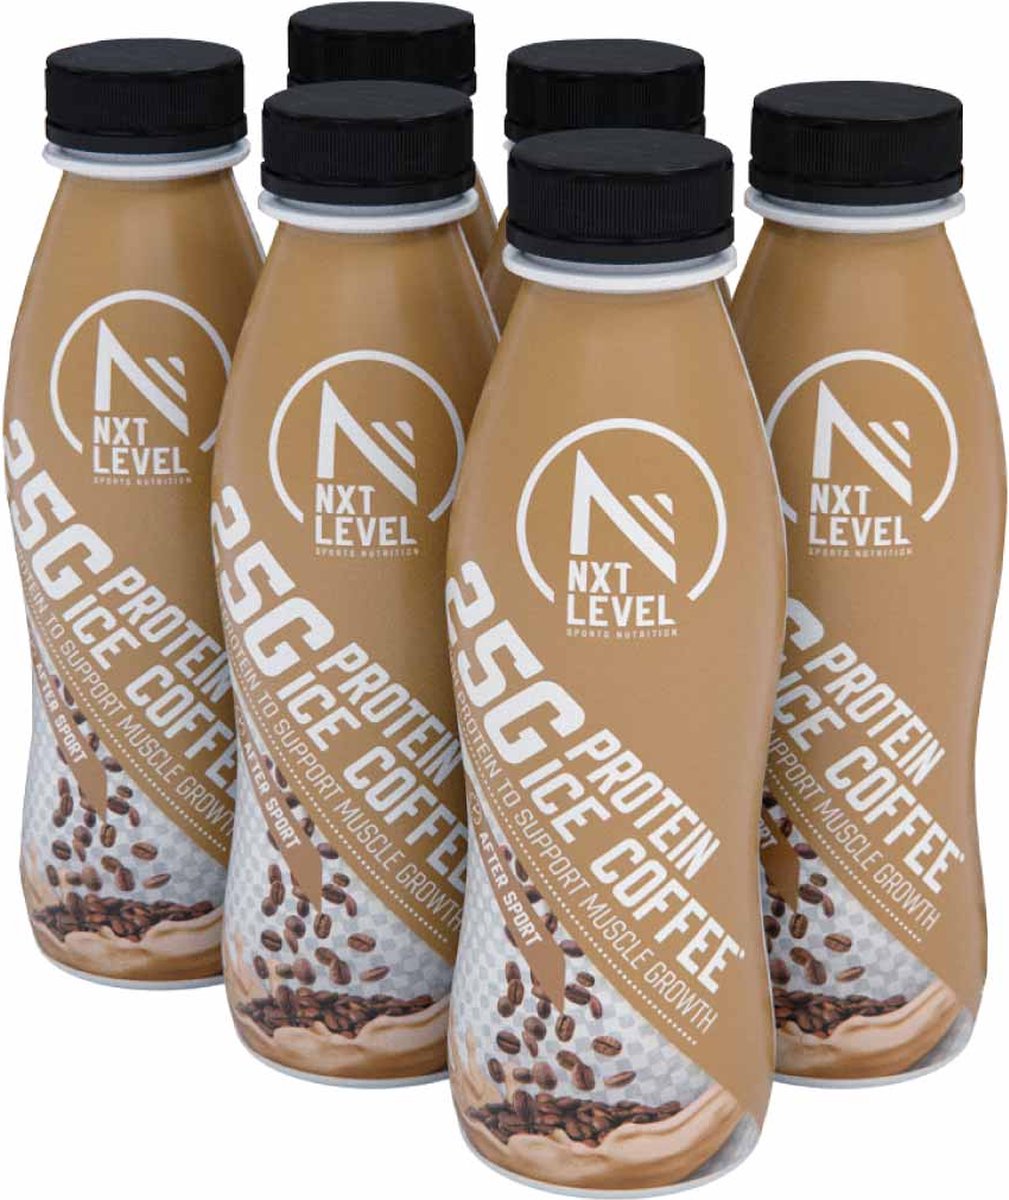 NXT Level Eiwitrijke Shake - 25g eiwitten per flesje - 6 x 330 ml - Koffie